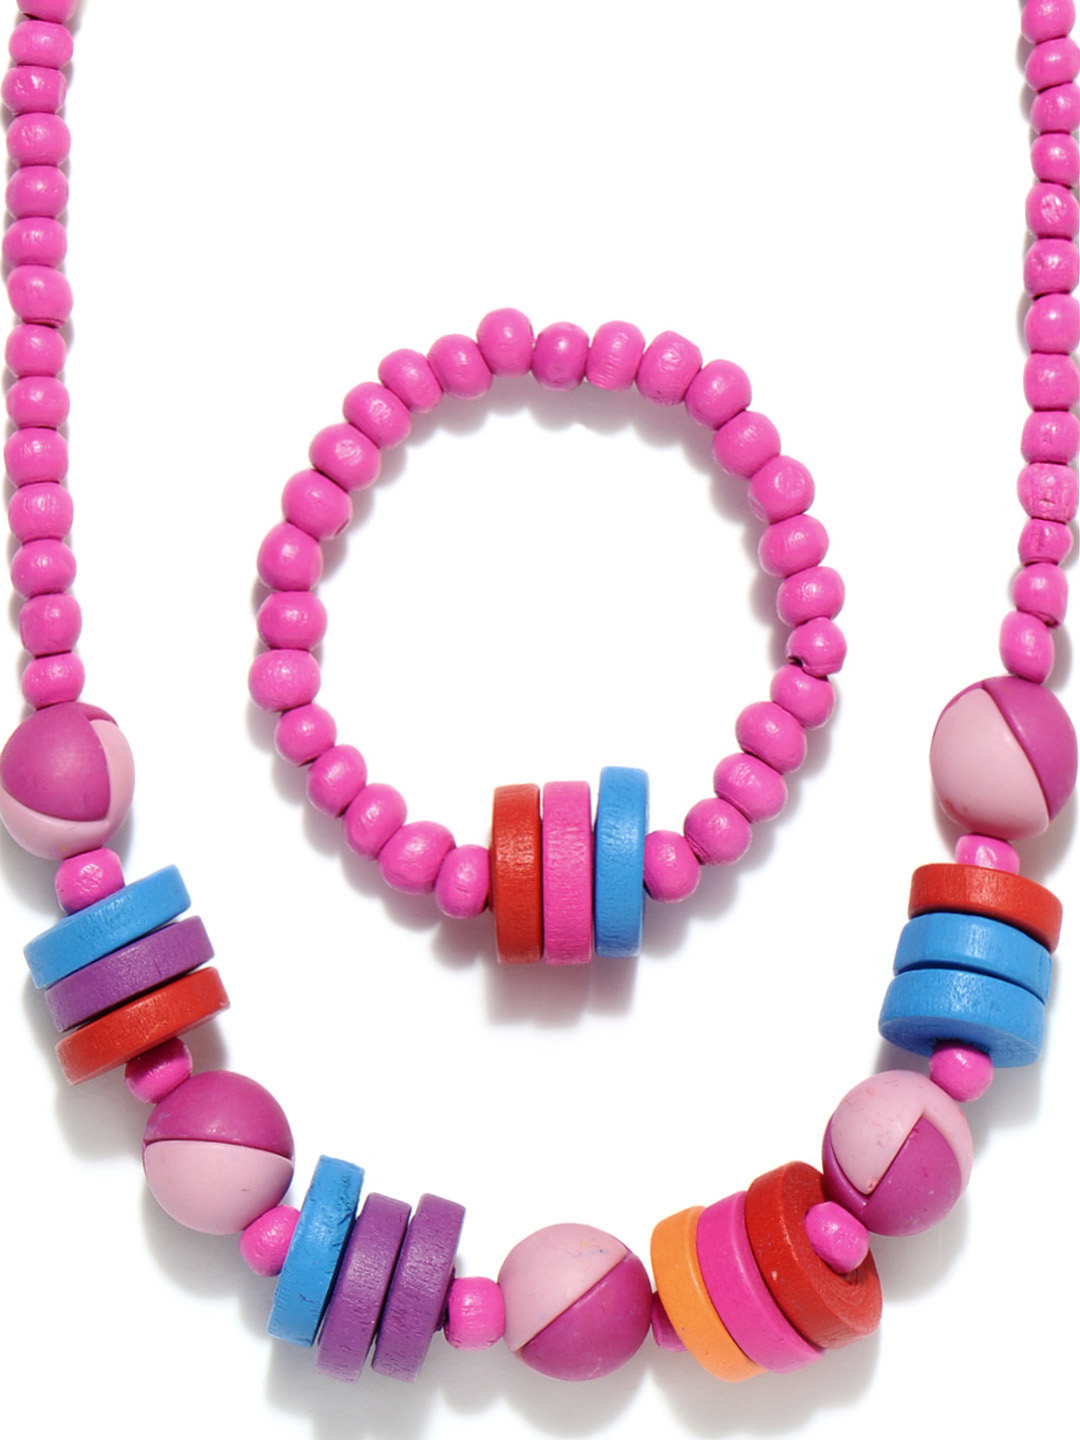 مجموعة رائعة من اكسسوارات البنات 2014 accessories for girls 34